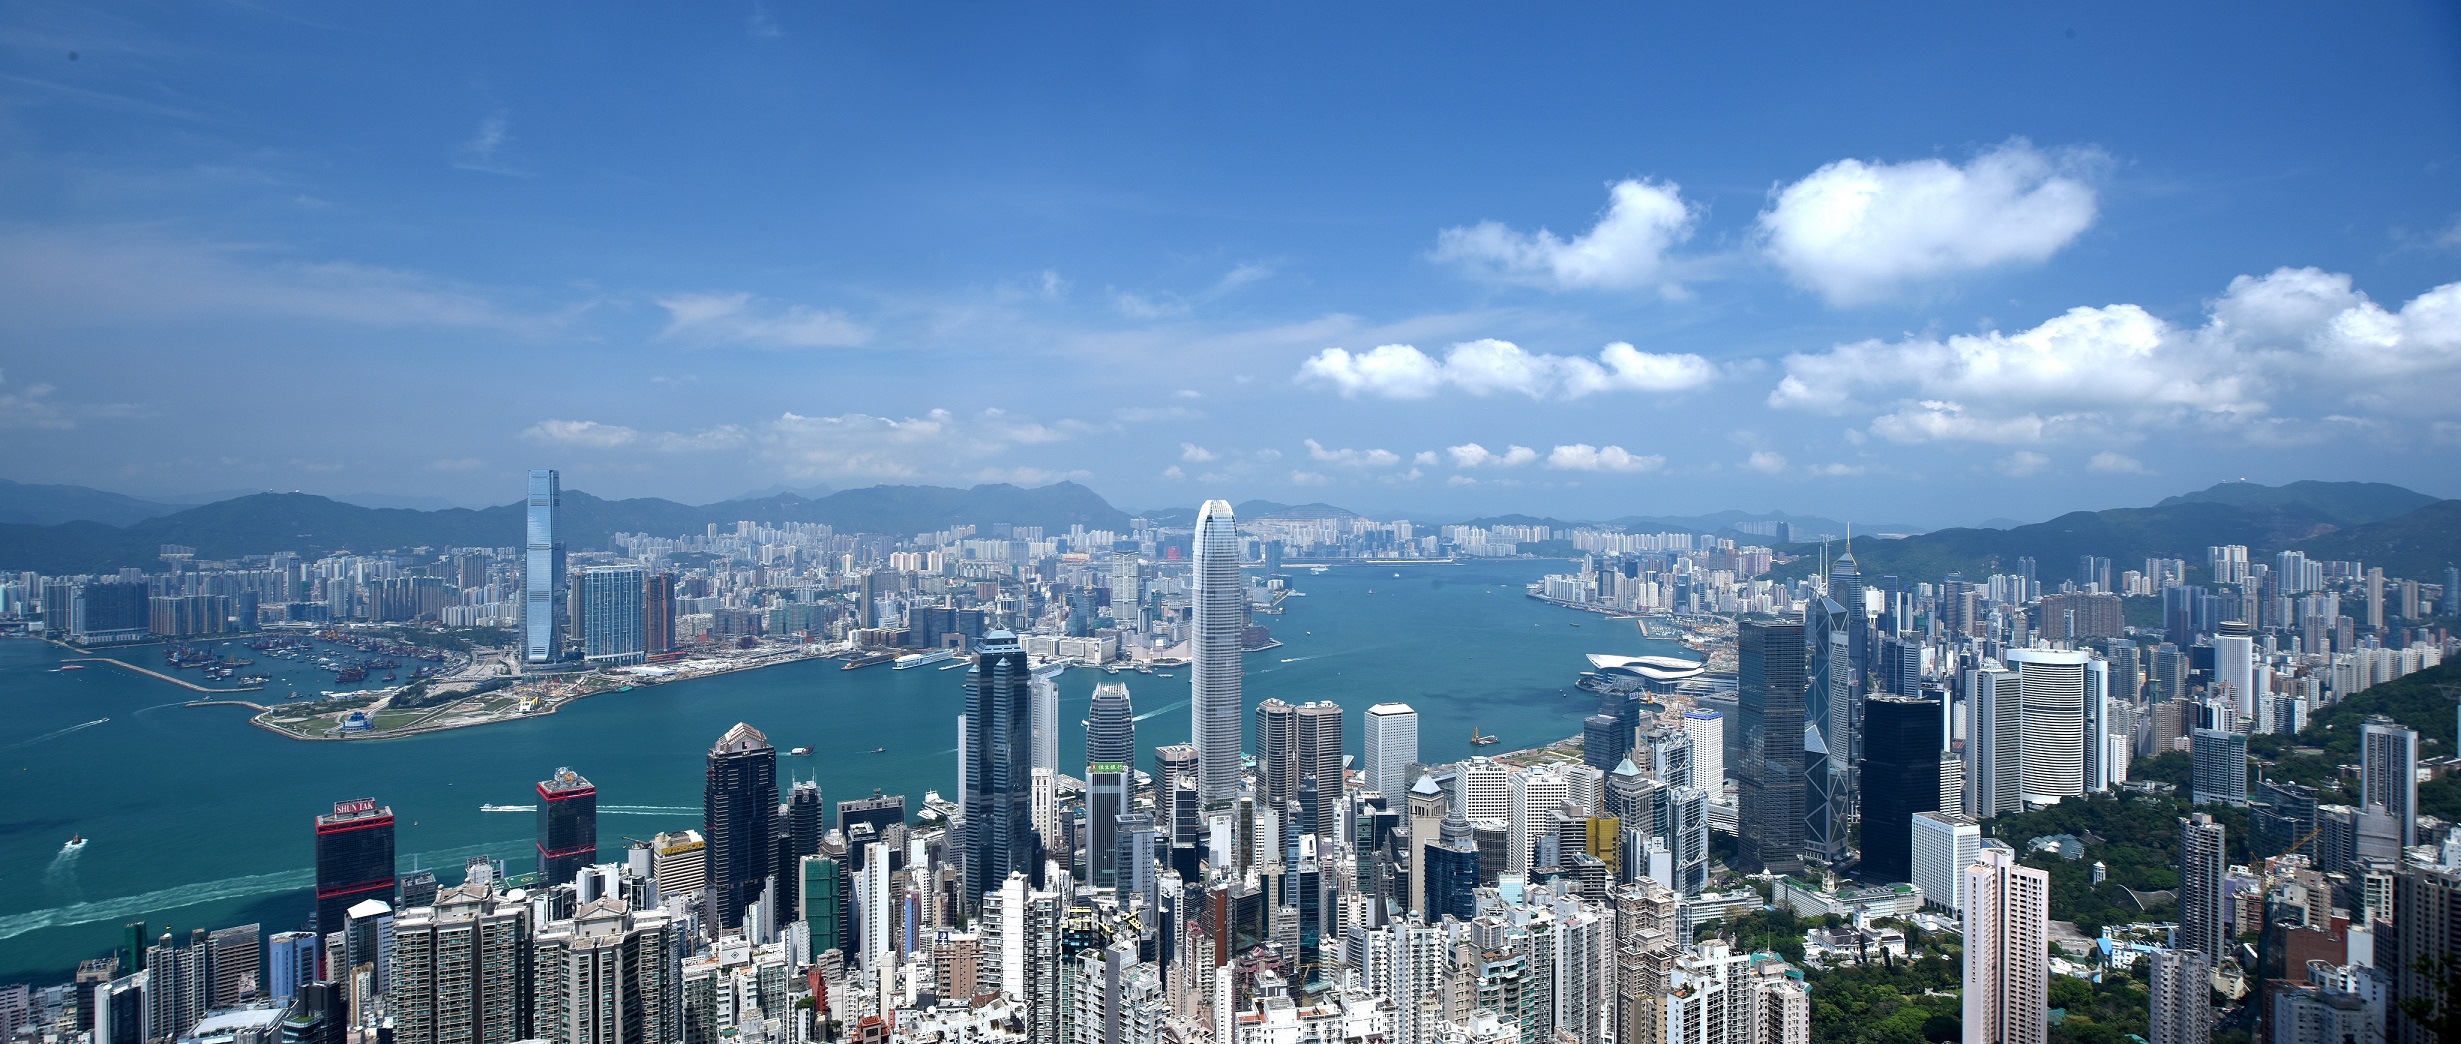 Χονγκ Κονγκ: Πύλη για Επιχειρηματικές Ευκαιρίες στην Ασία